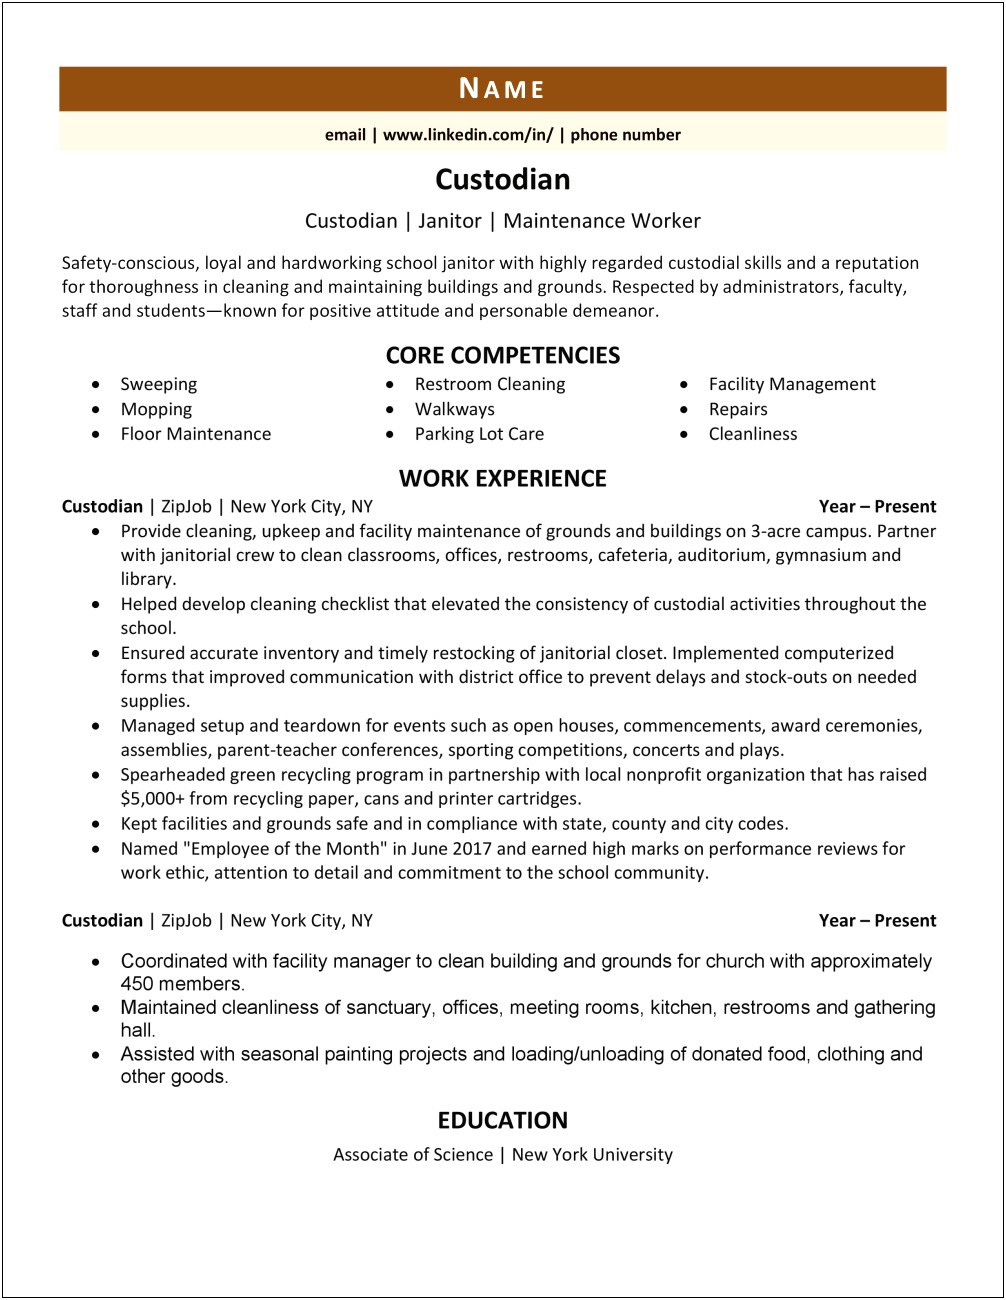 Sample Resume Job Description For Shoveling Snow